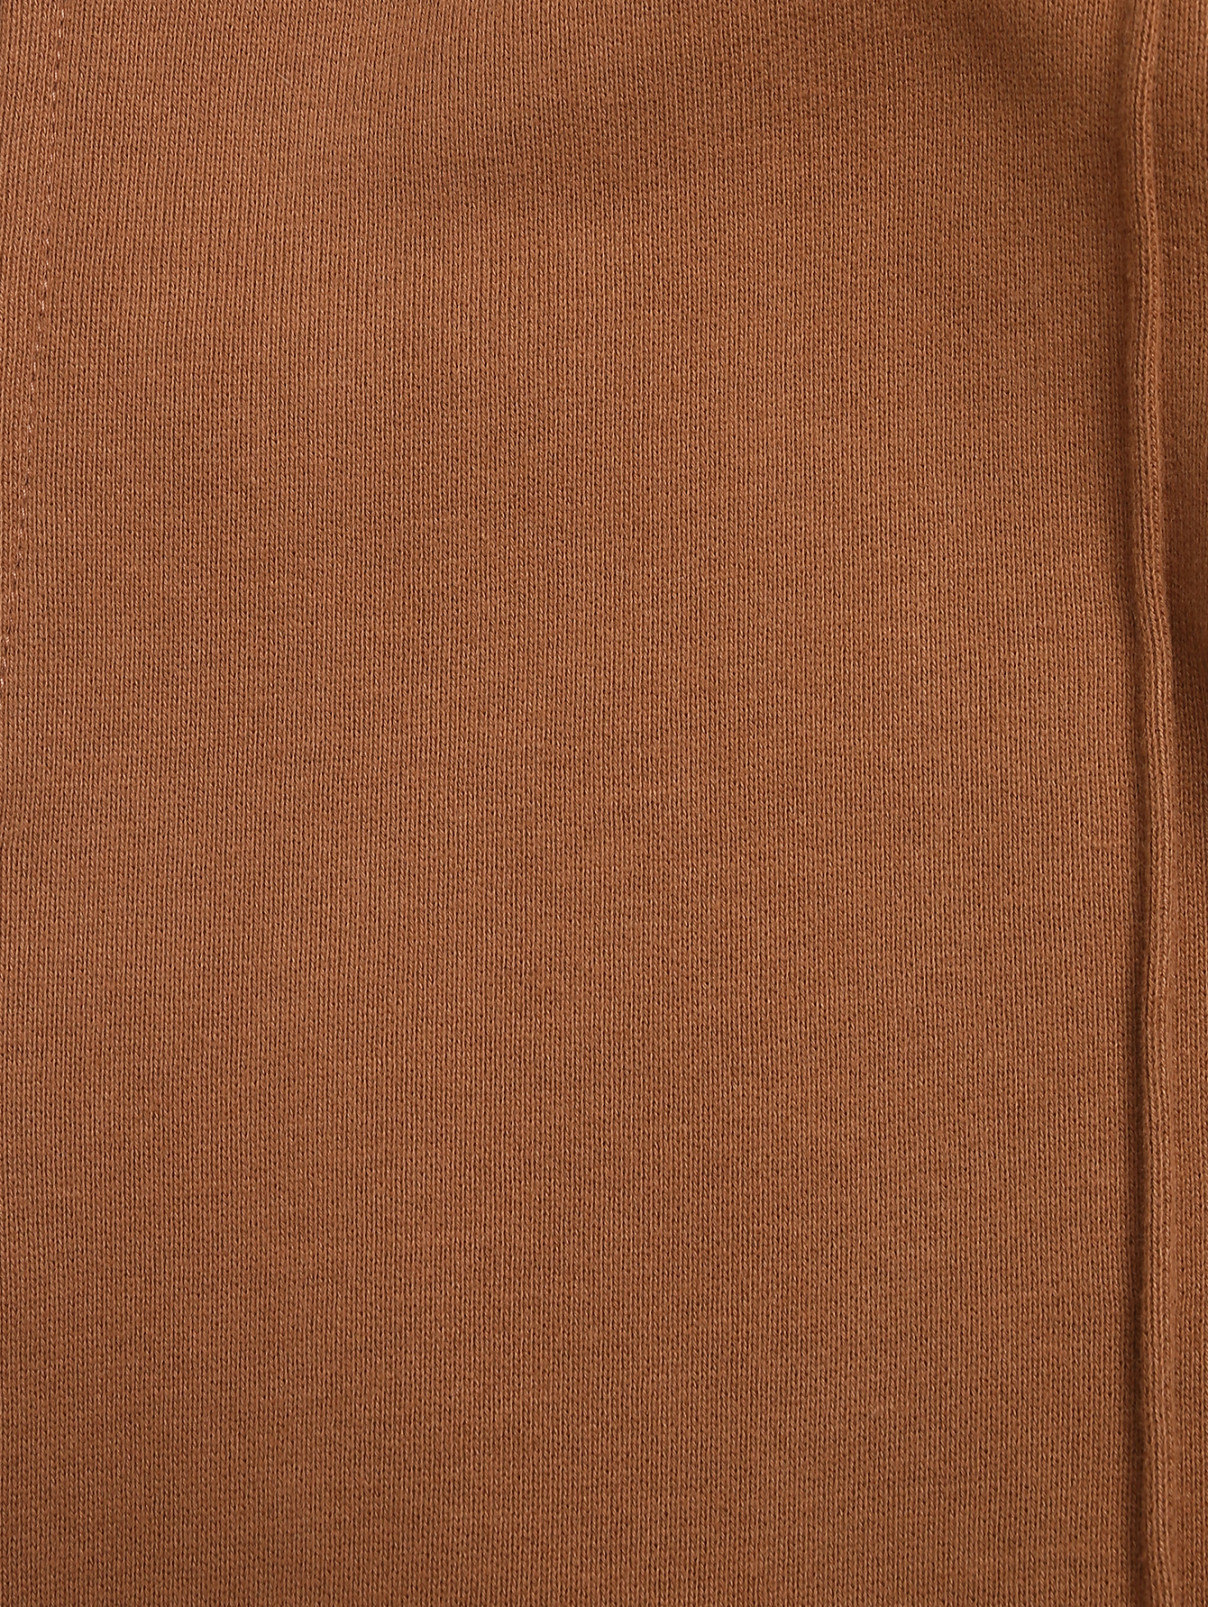 Однотонные брюки из хлопка на резинке Ermanno Scervino  –  Деталь  – Цвет:  Коричневый